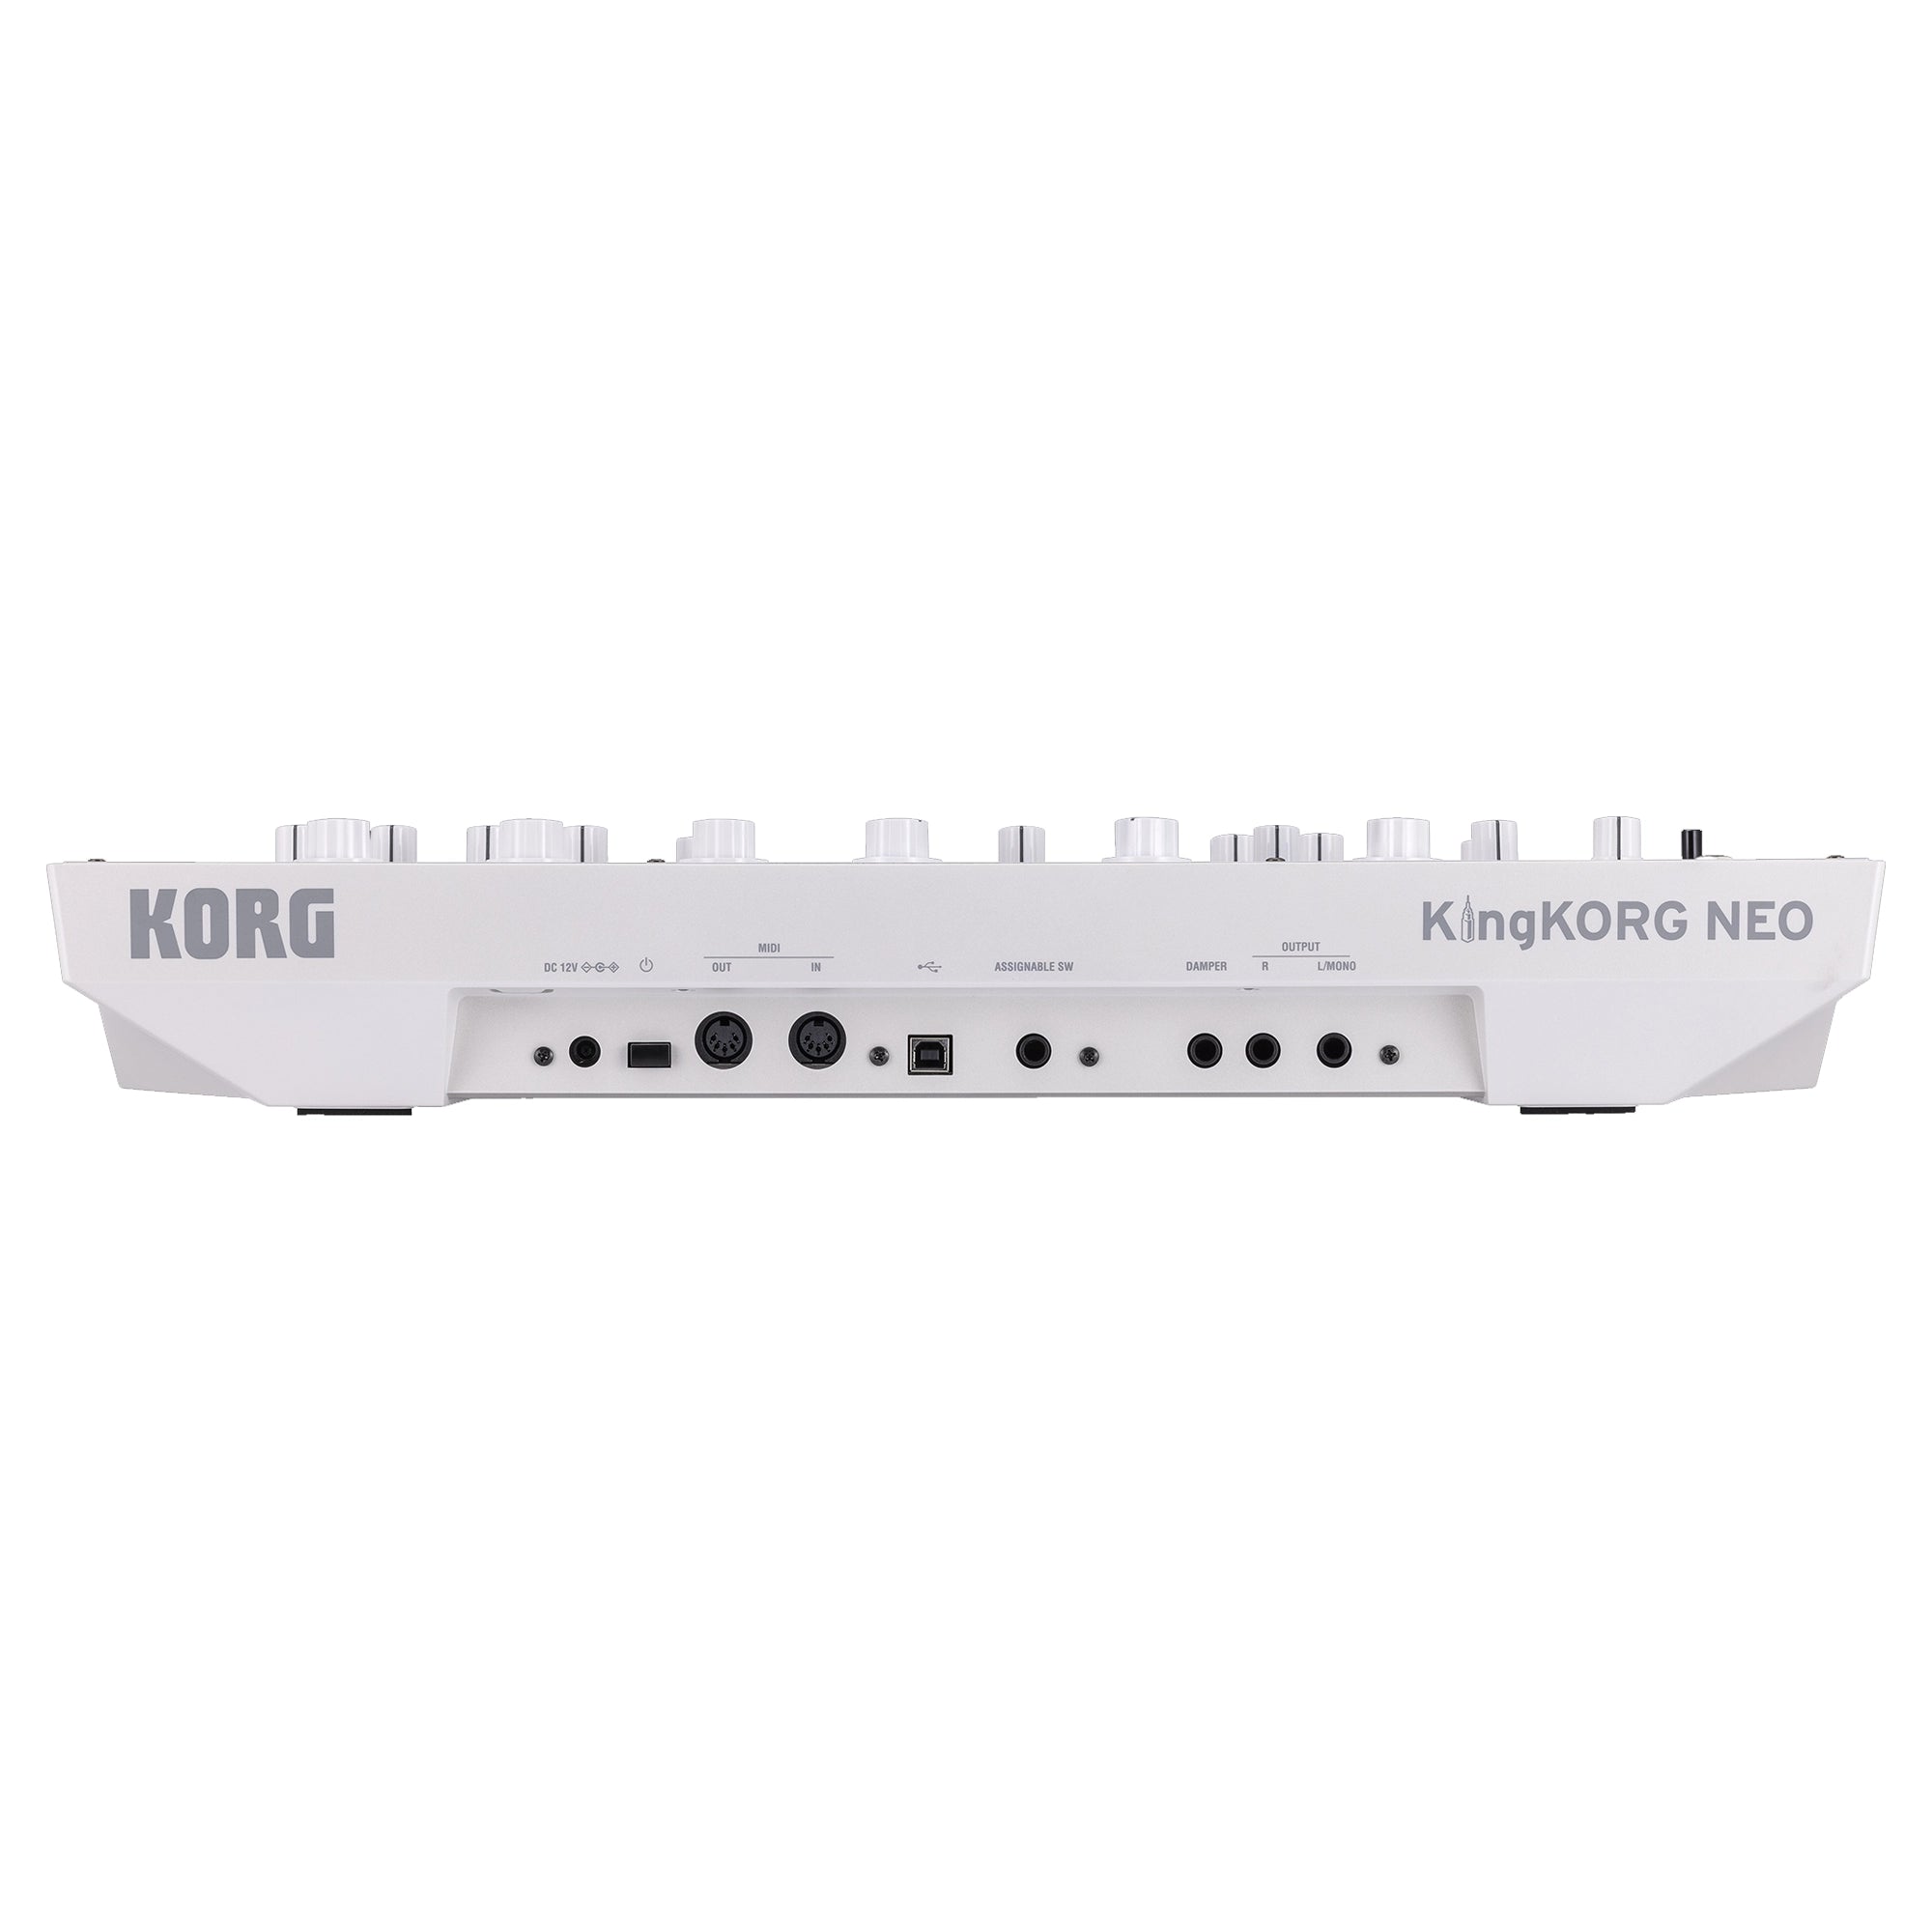 Korg KingKORG Neo 37-key Virtual Analog Synthesizer and Vocoder